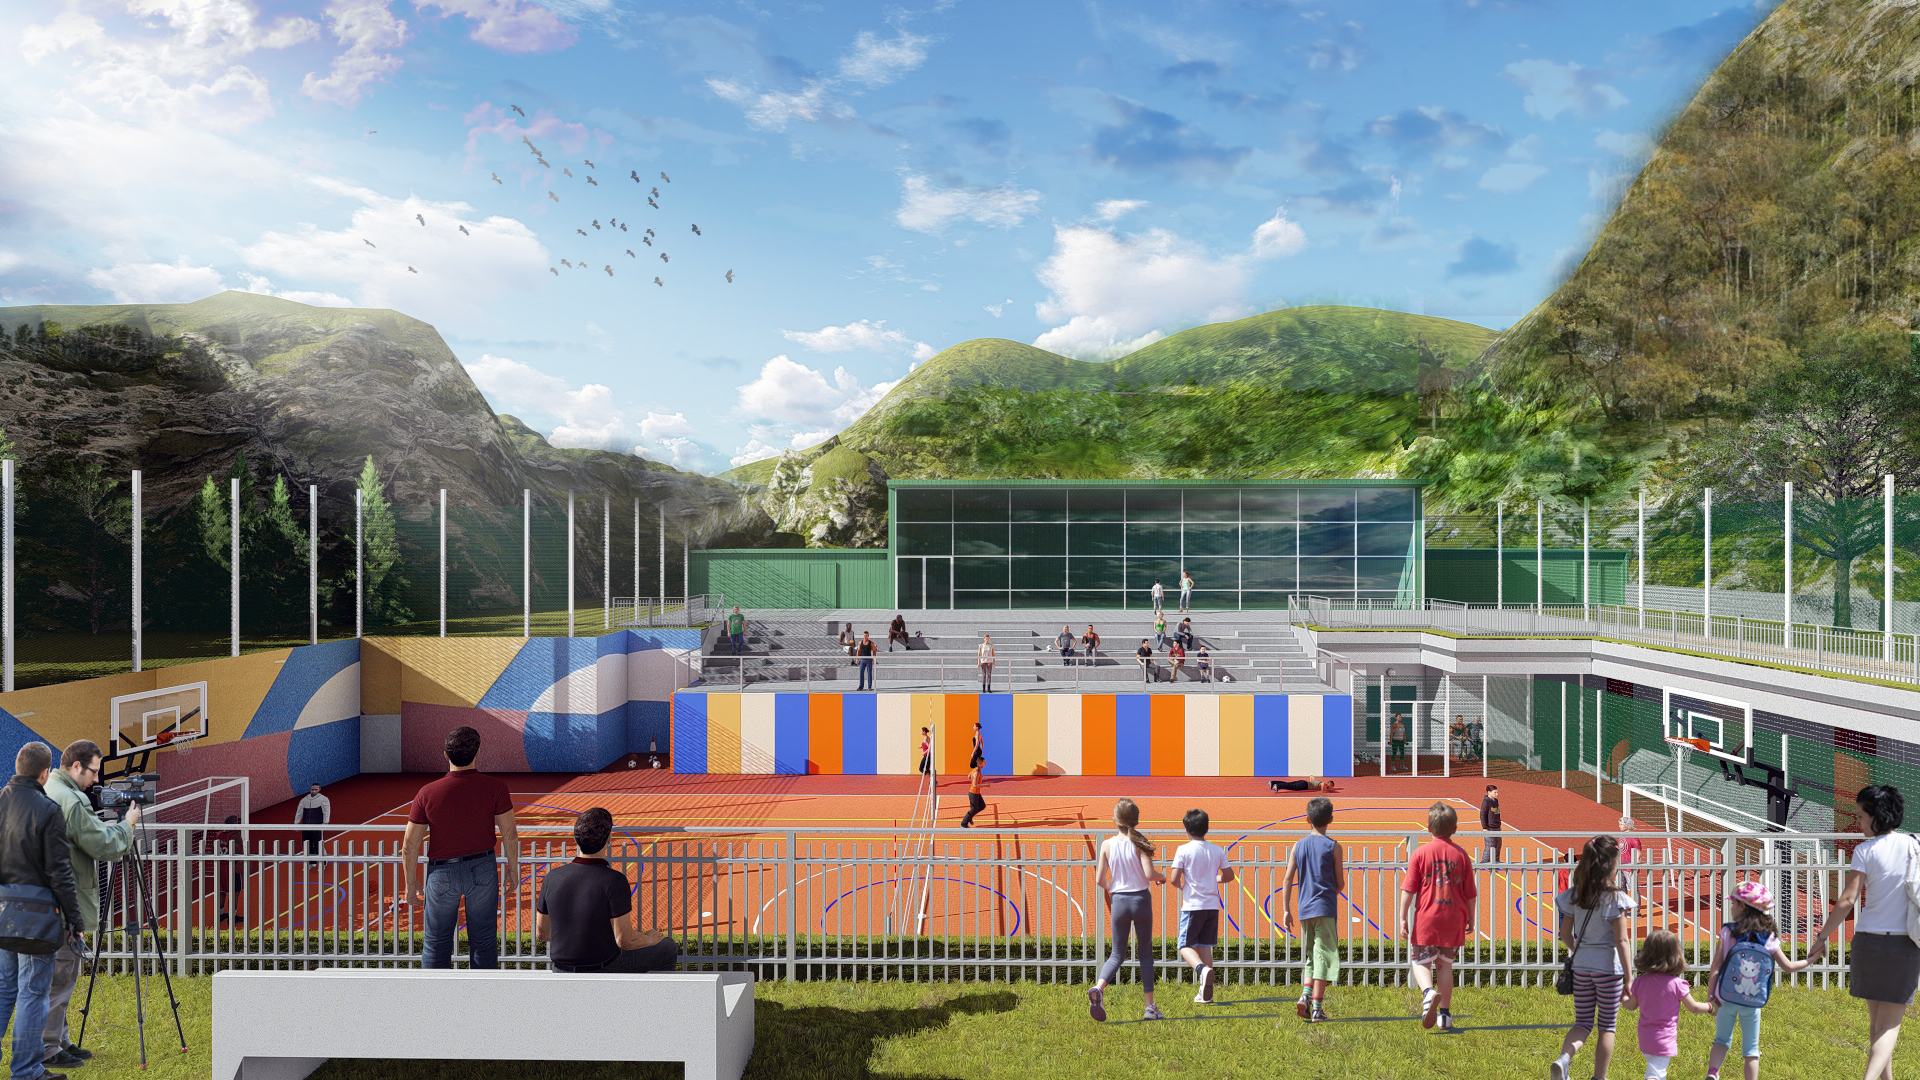  Bosch inaugura il nuovo centro sportivo a sostegno delle popolazioni colpite dal sisma ad Acquasanta Terme